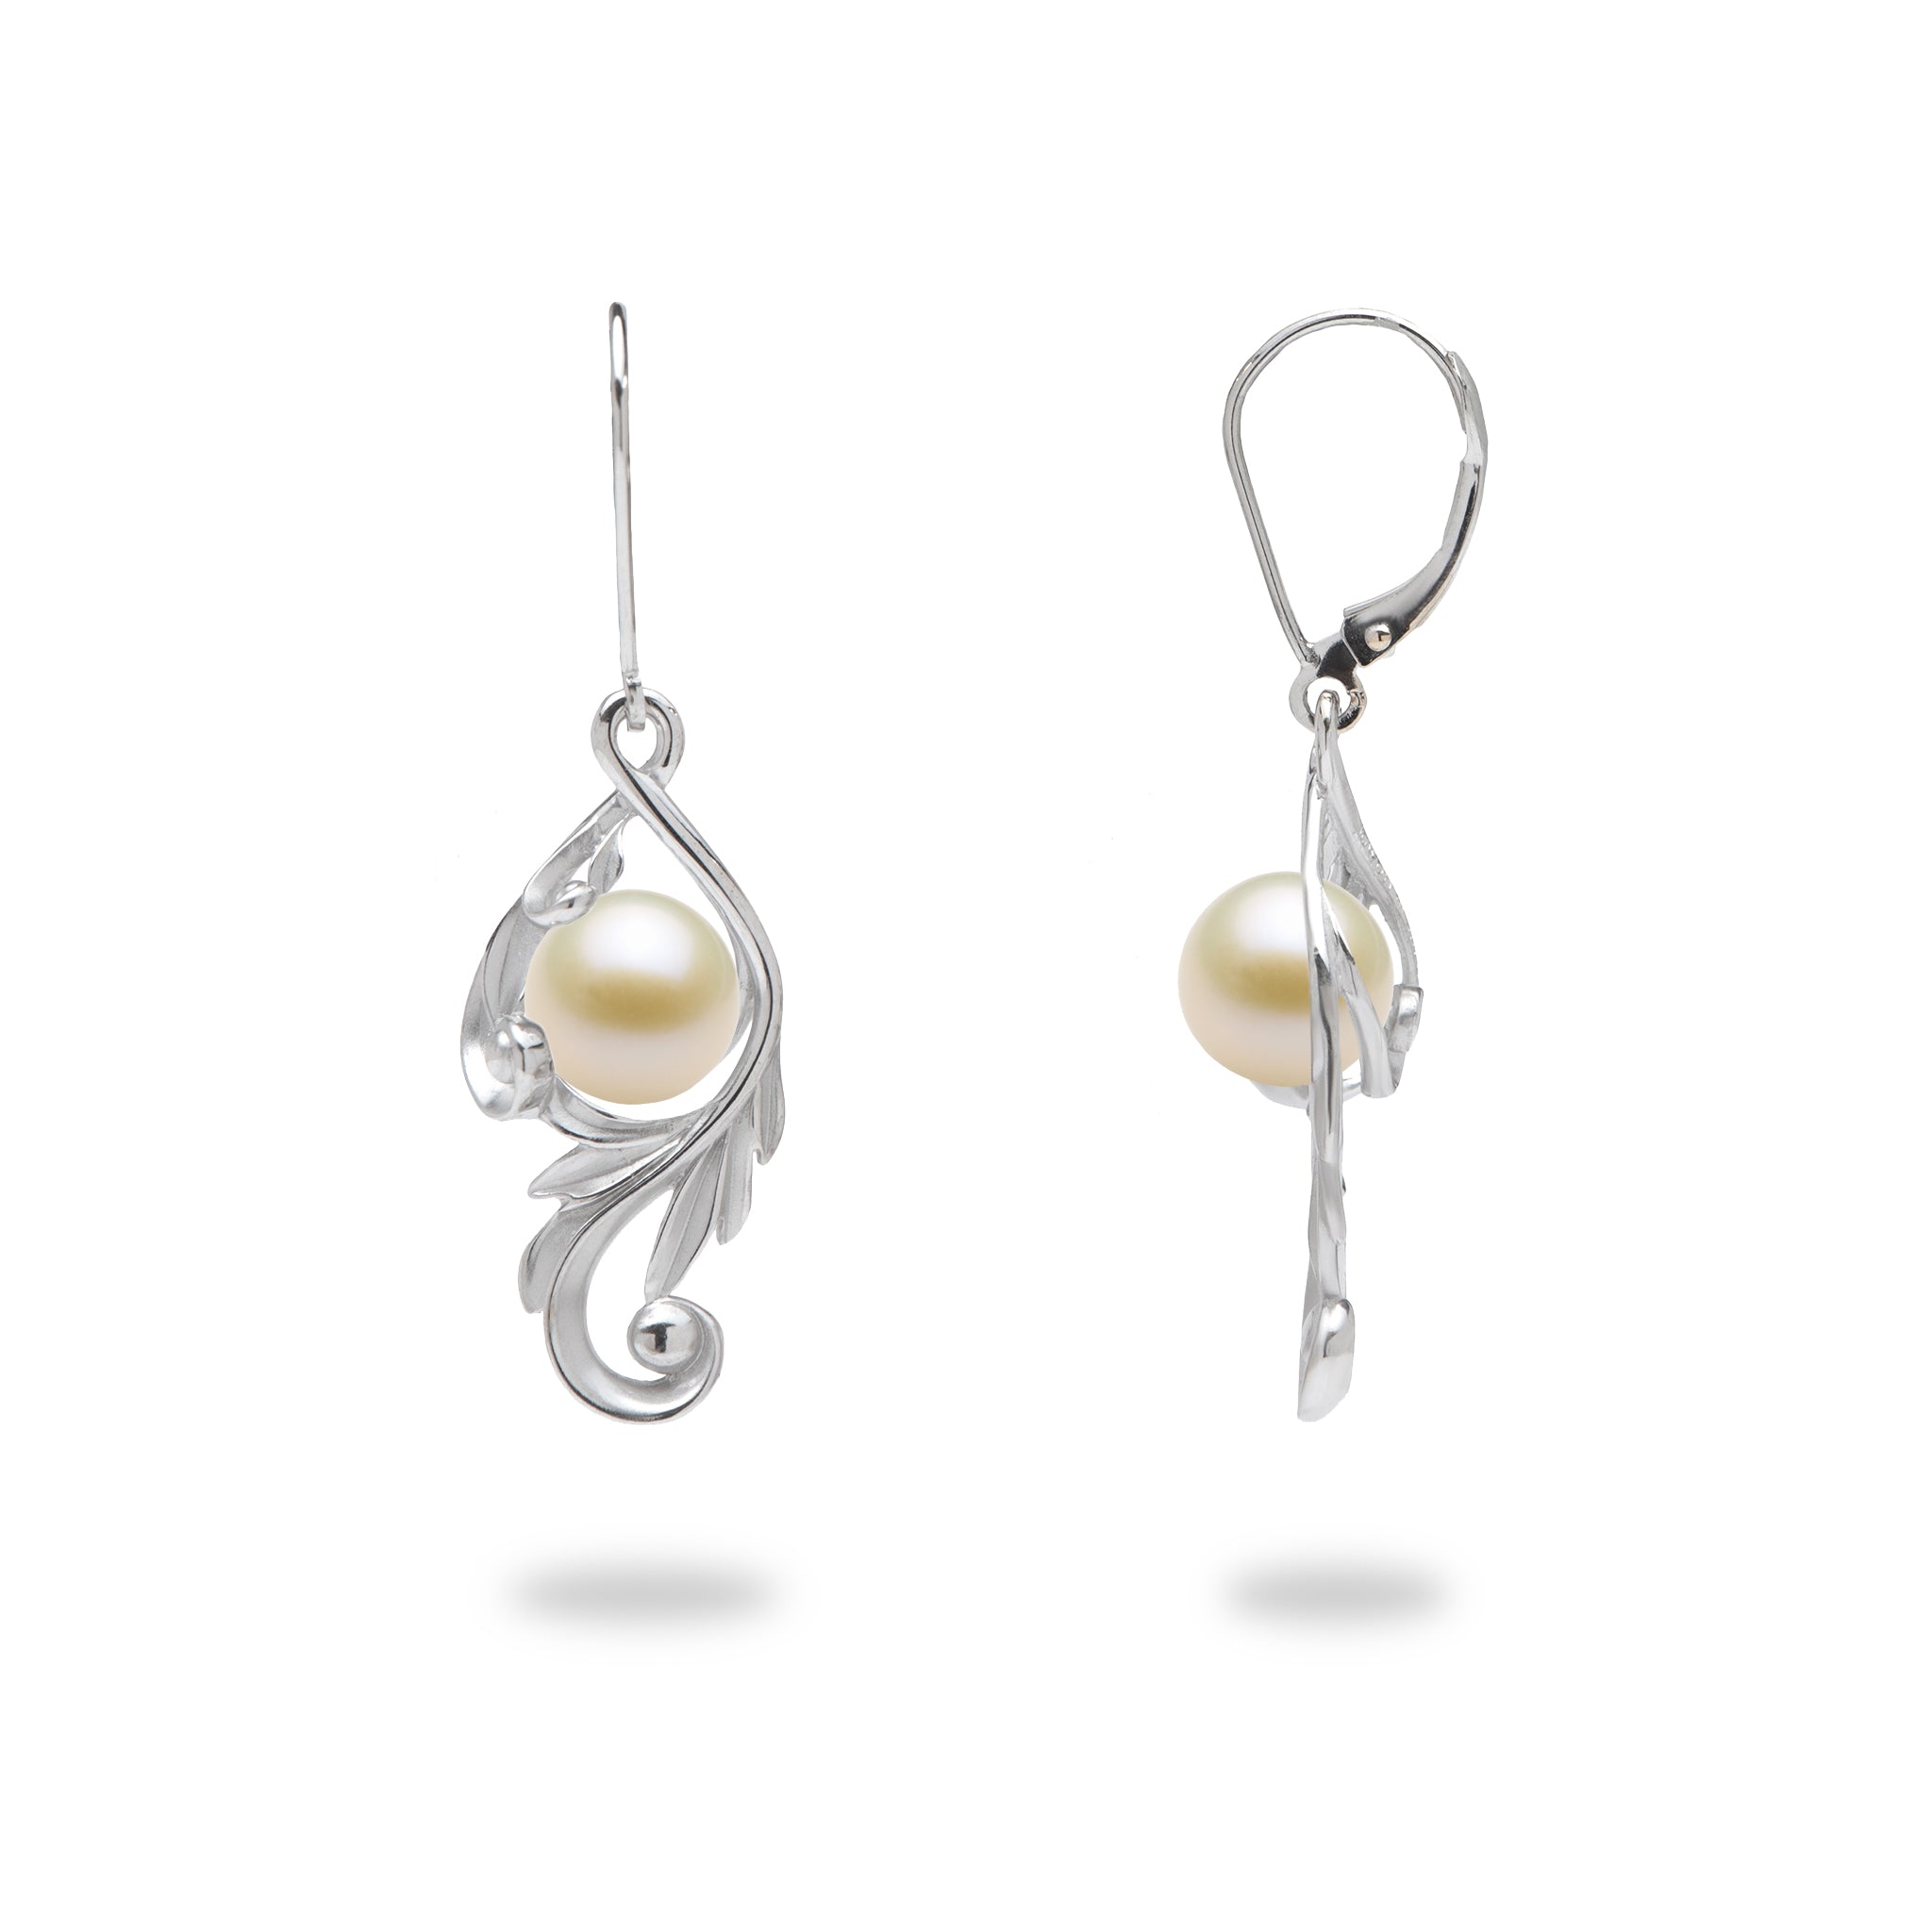 Choisissez une boucle d'oreilles de défilement perle maile en or blanc